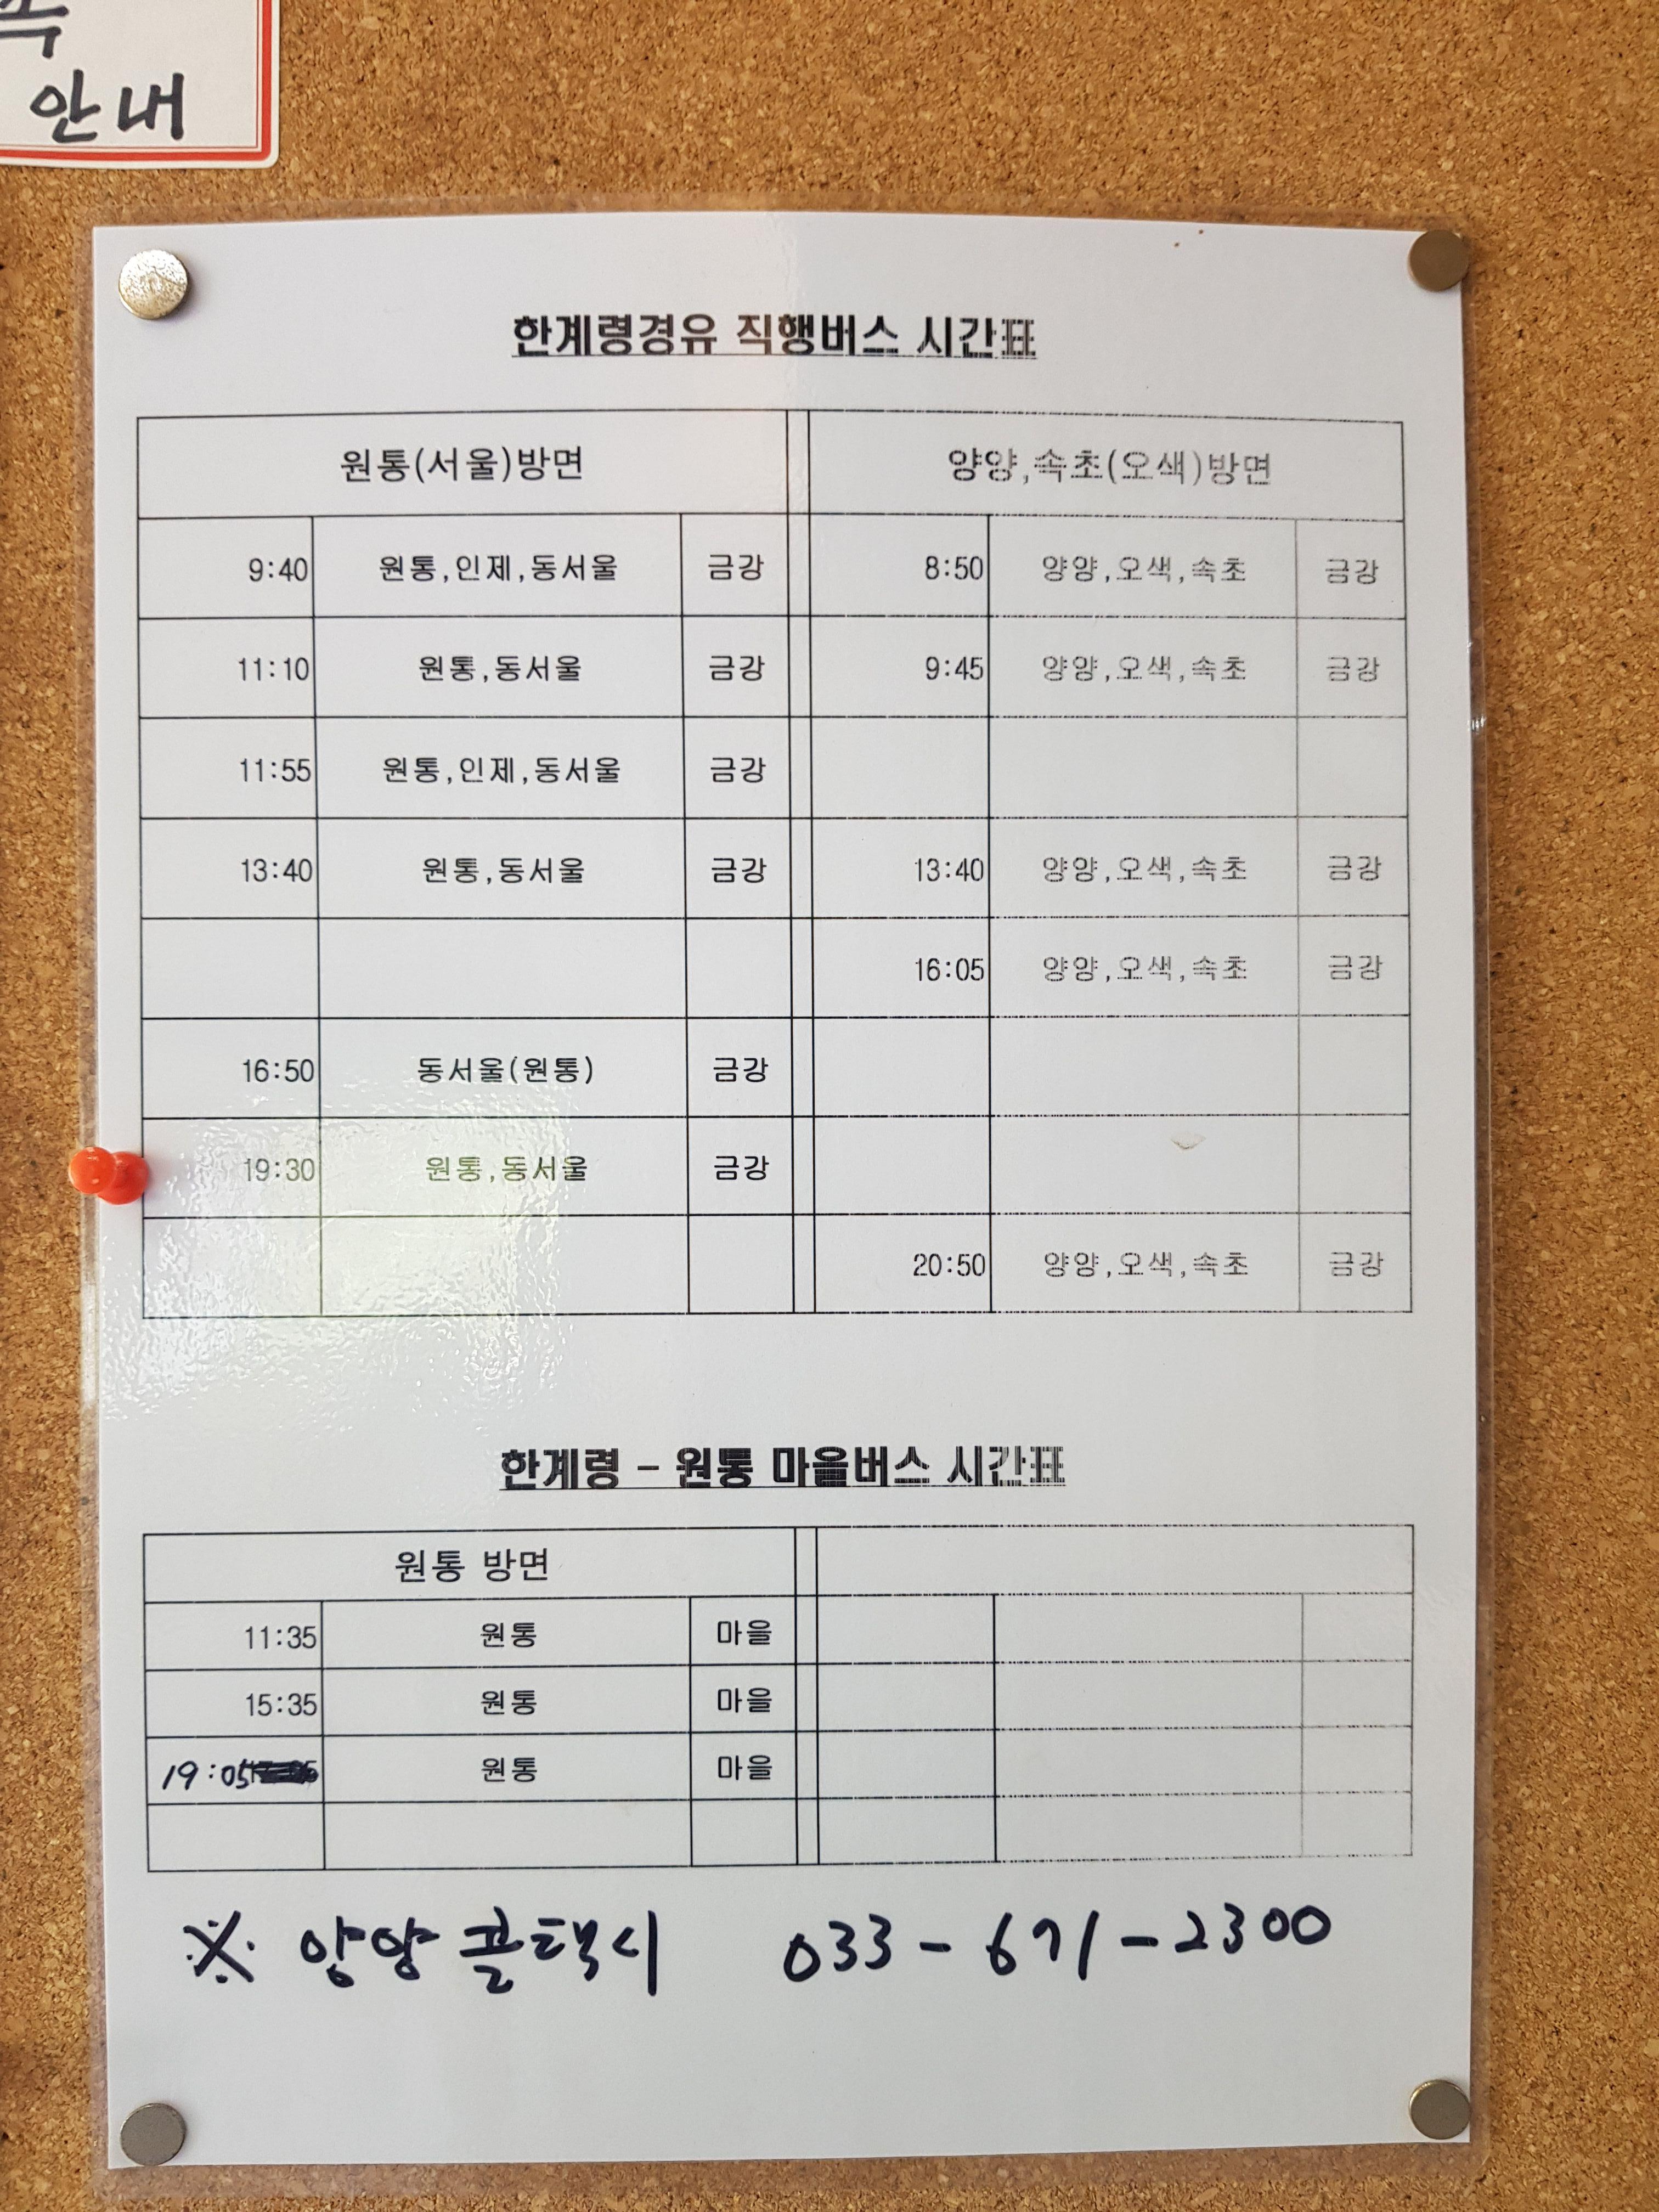 한계령 경유 동서울행 버스시간표